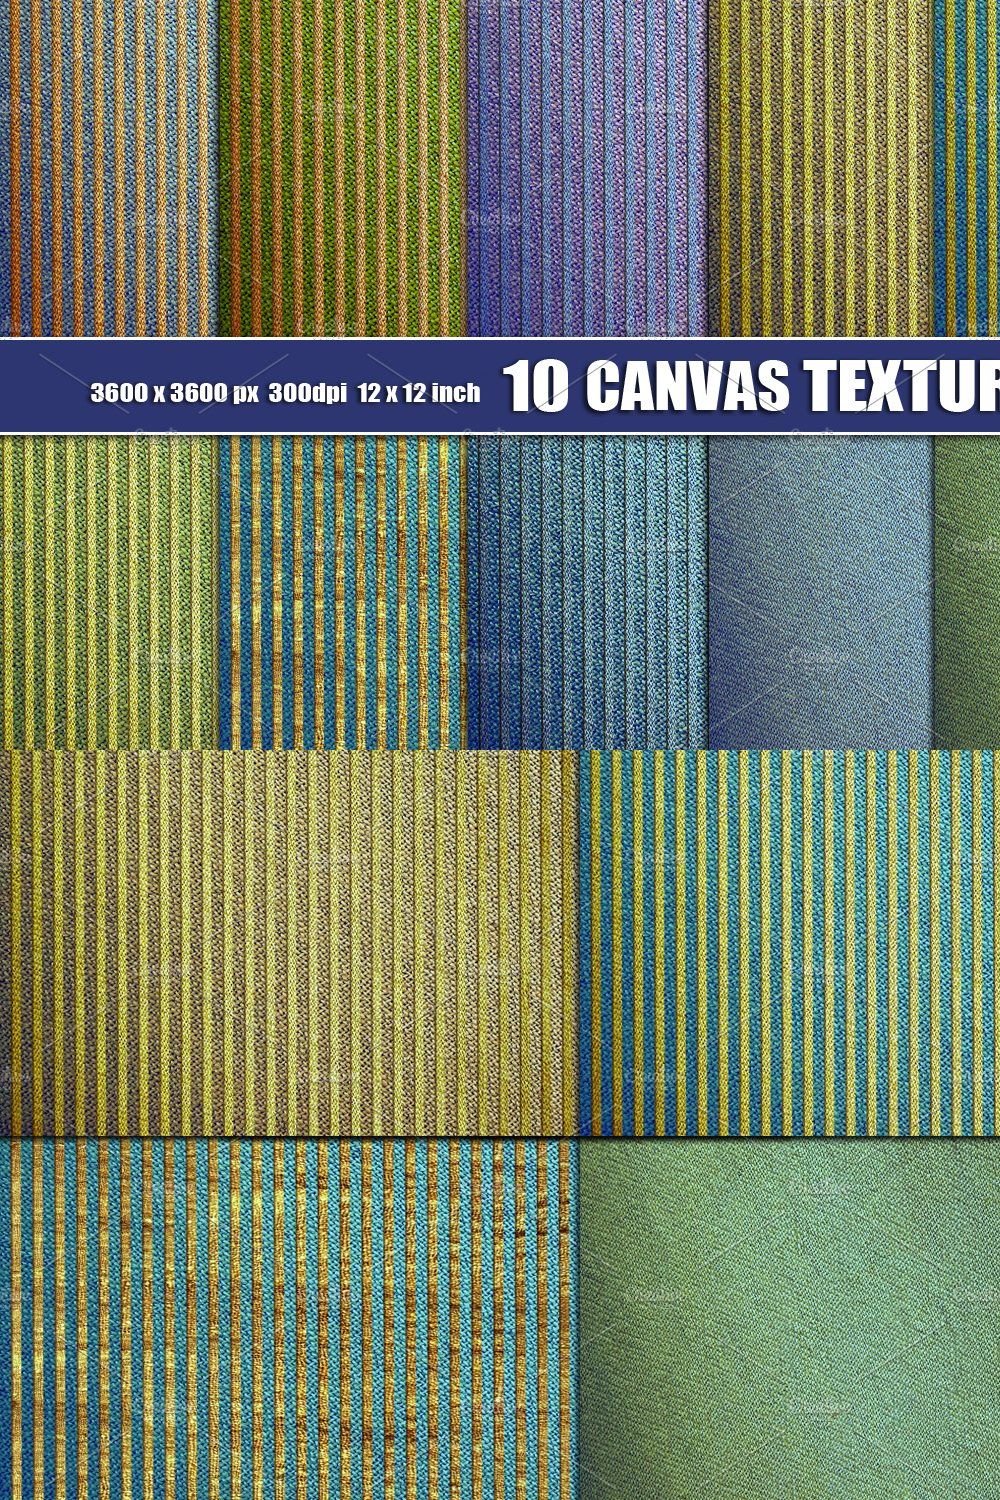 Linen Canvas Textile Texture pinterest preview image.